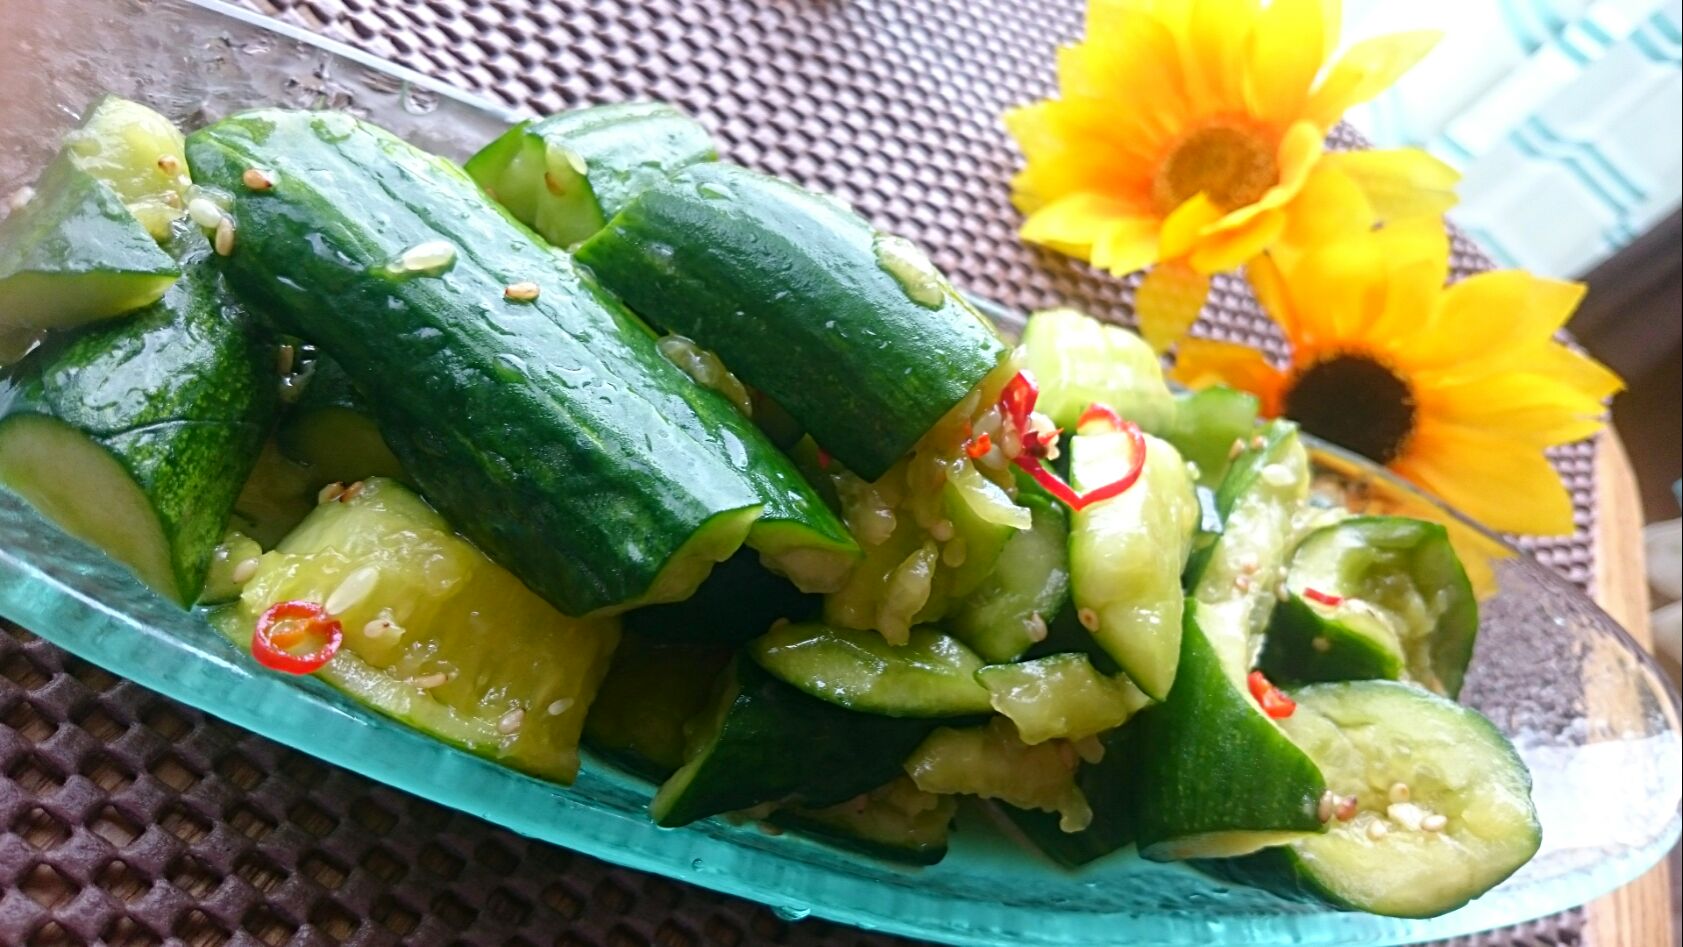 西葫芦(Zucchini Akourte)蔬菜食品背景 库存图片 - 图片 包括有 绿皮胡瓜, 素食主义者: 252150823